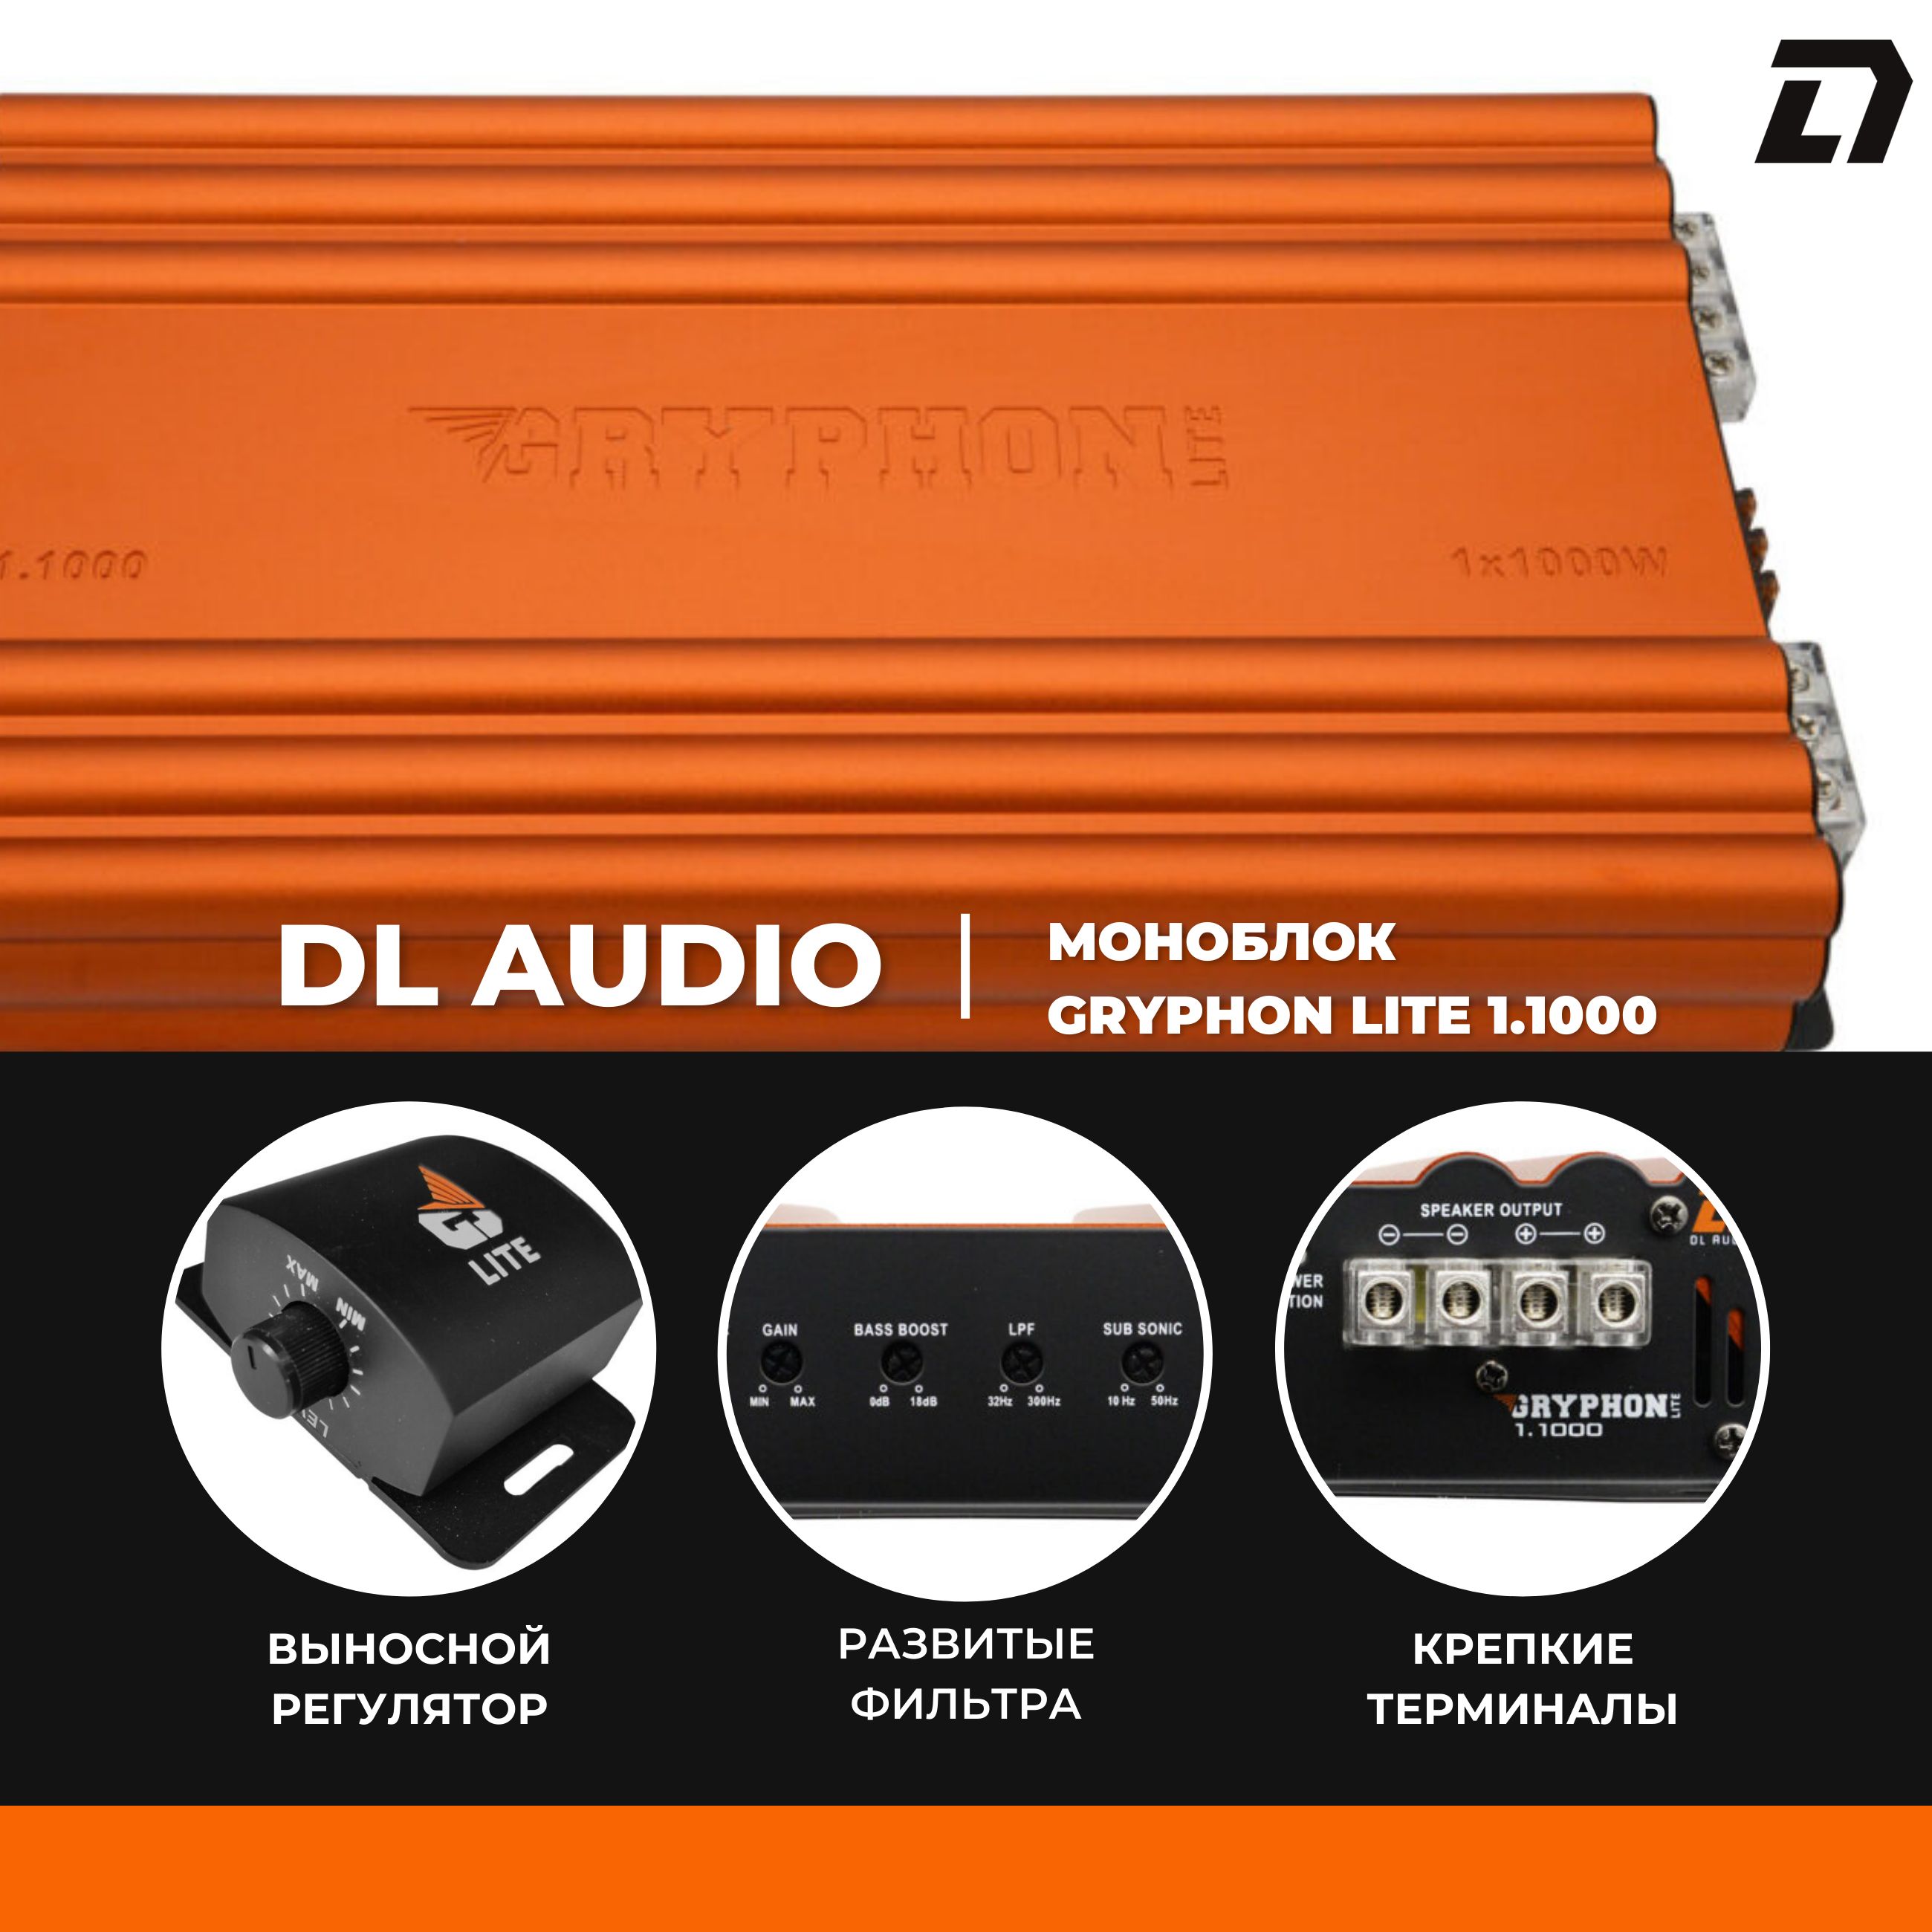 Моноблок dl. Моноблок DL Audio 1.2 500. Моноблок DL Audio 3.200. Моноблоко del Audio. Моноблок DL Audio оранжевый.